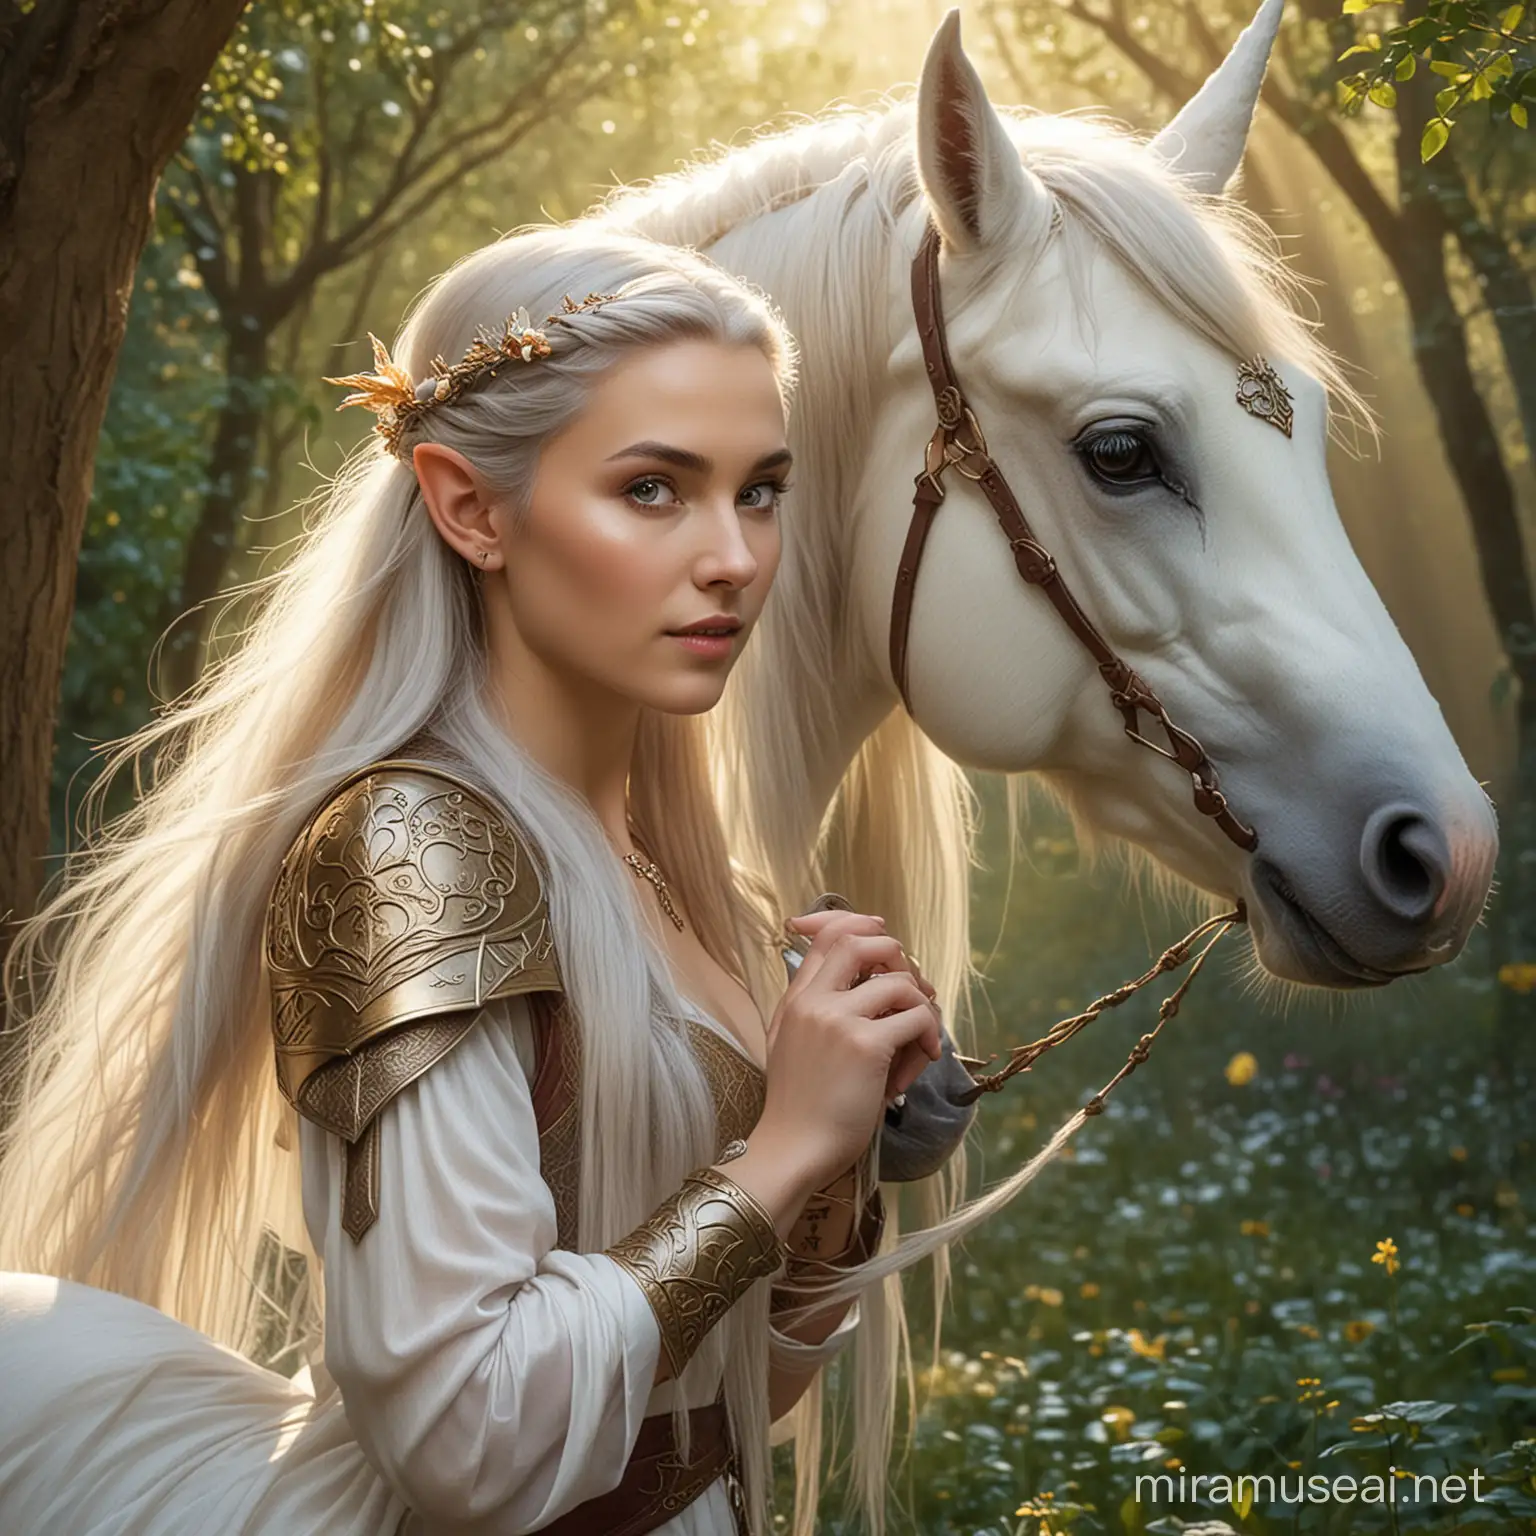 Eine elfische Prinzessin, die einen Pakt mit einem Einhorn geschlossen hat.